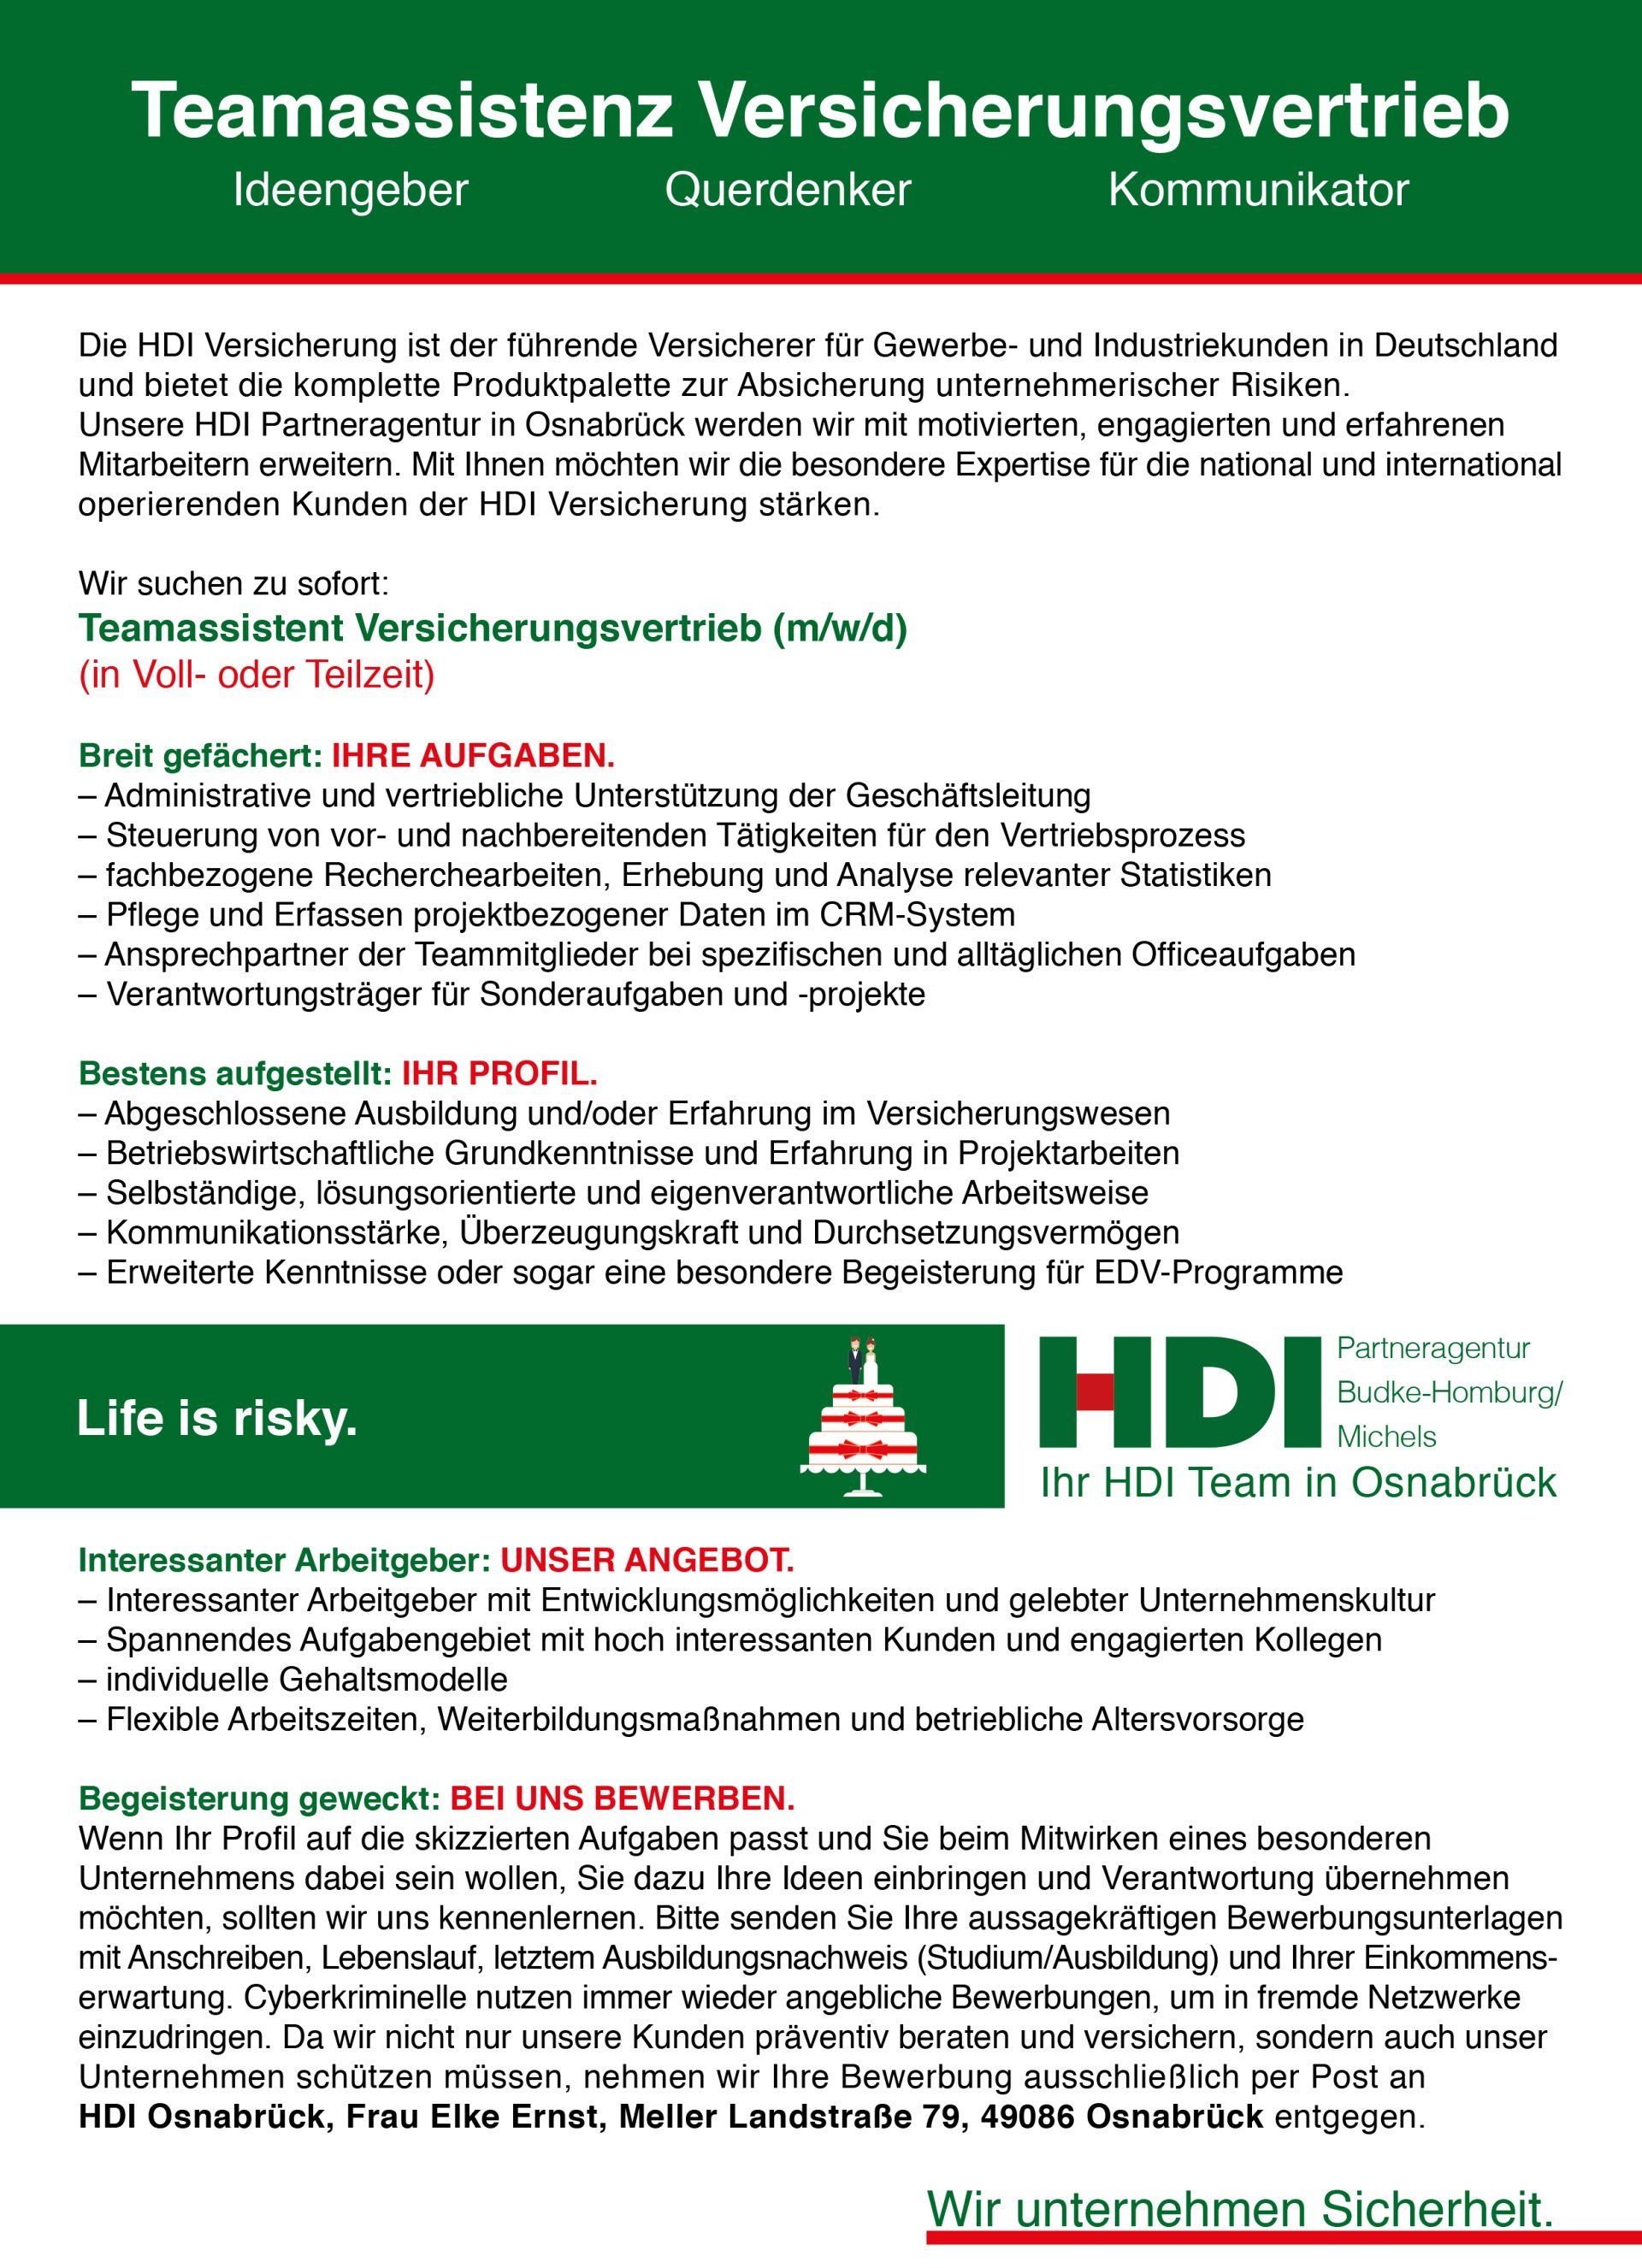 2-serve HDI Osnabrück Stellenanzeige Teamassistenz Versicherungsvertrieb Vollzeit Teilzeit